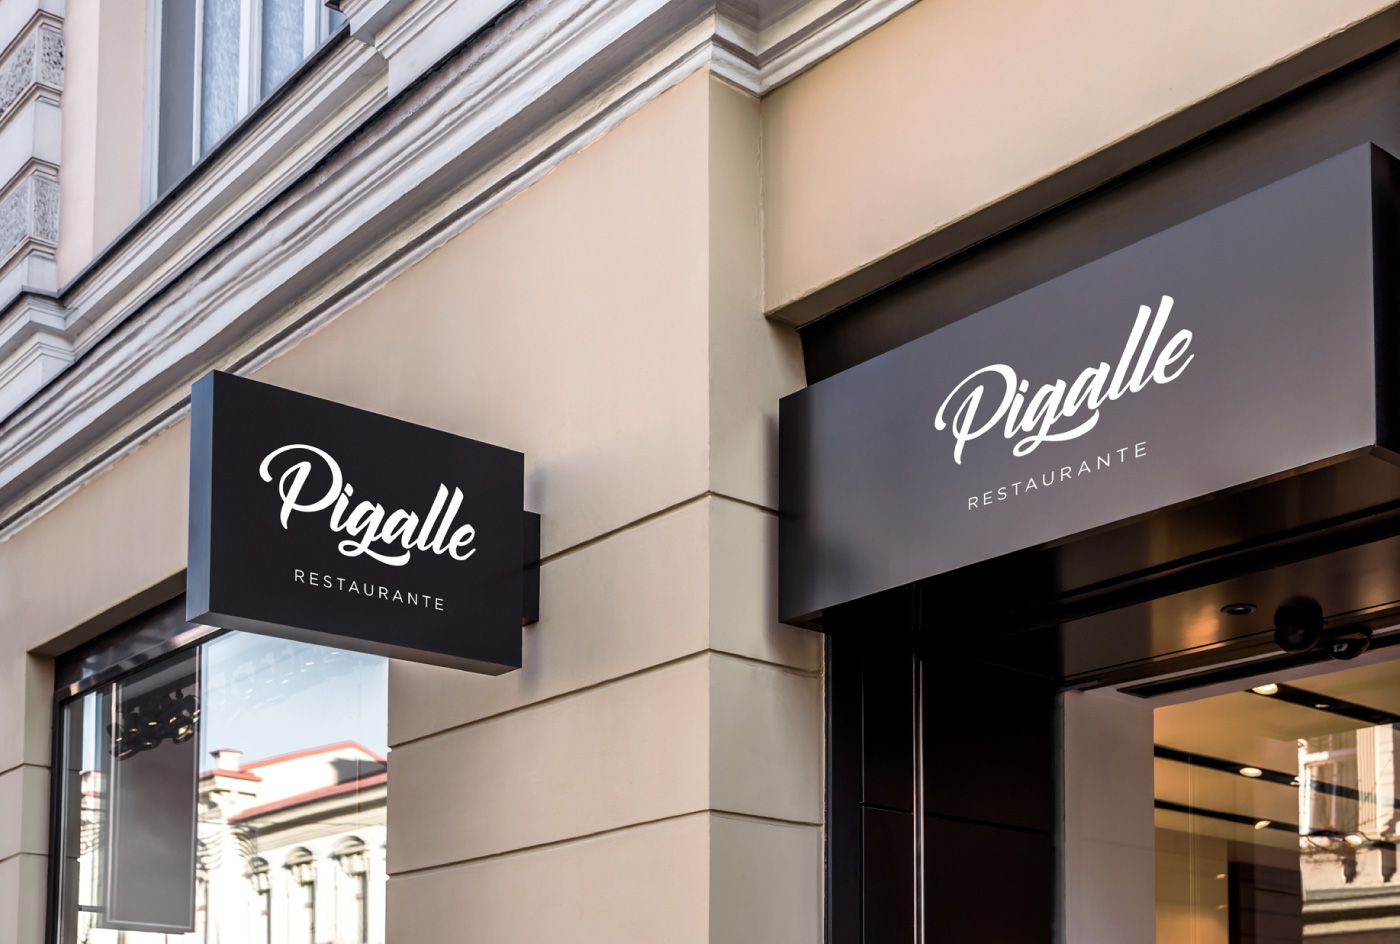 Pigalle Restaurante